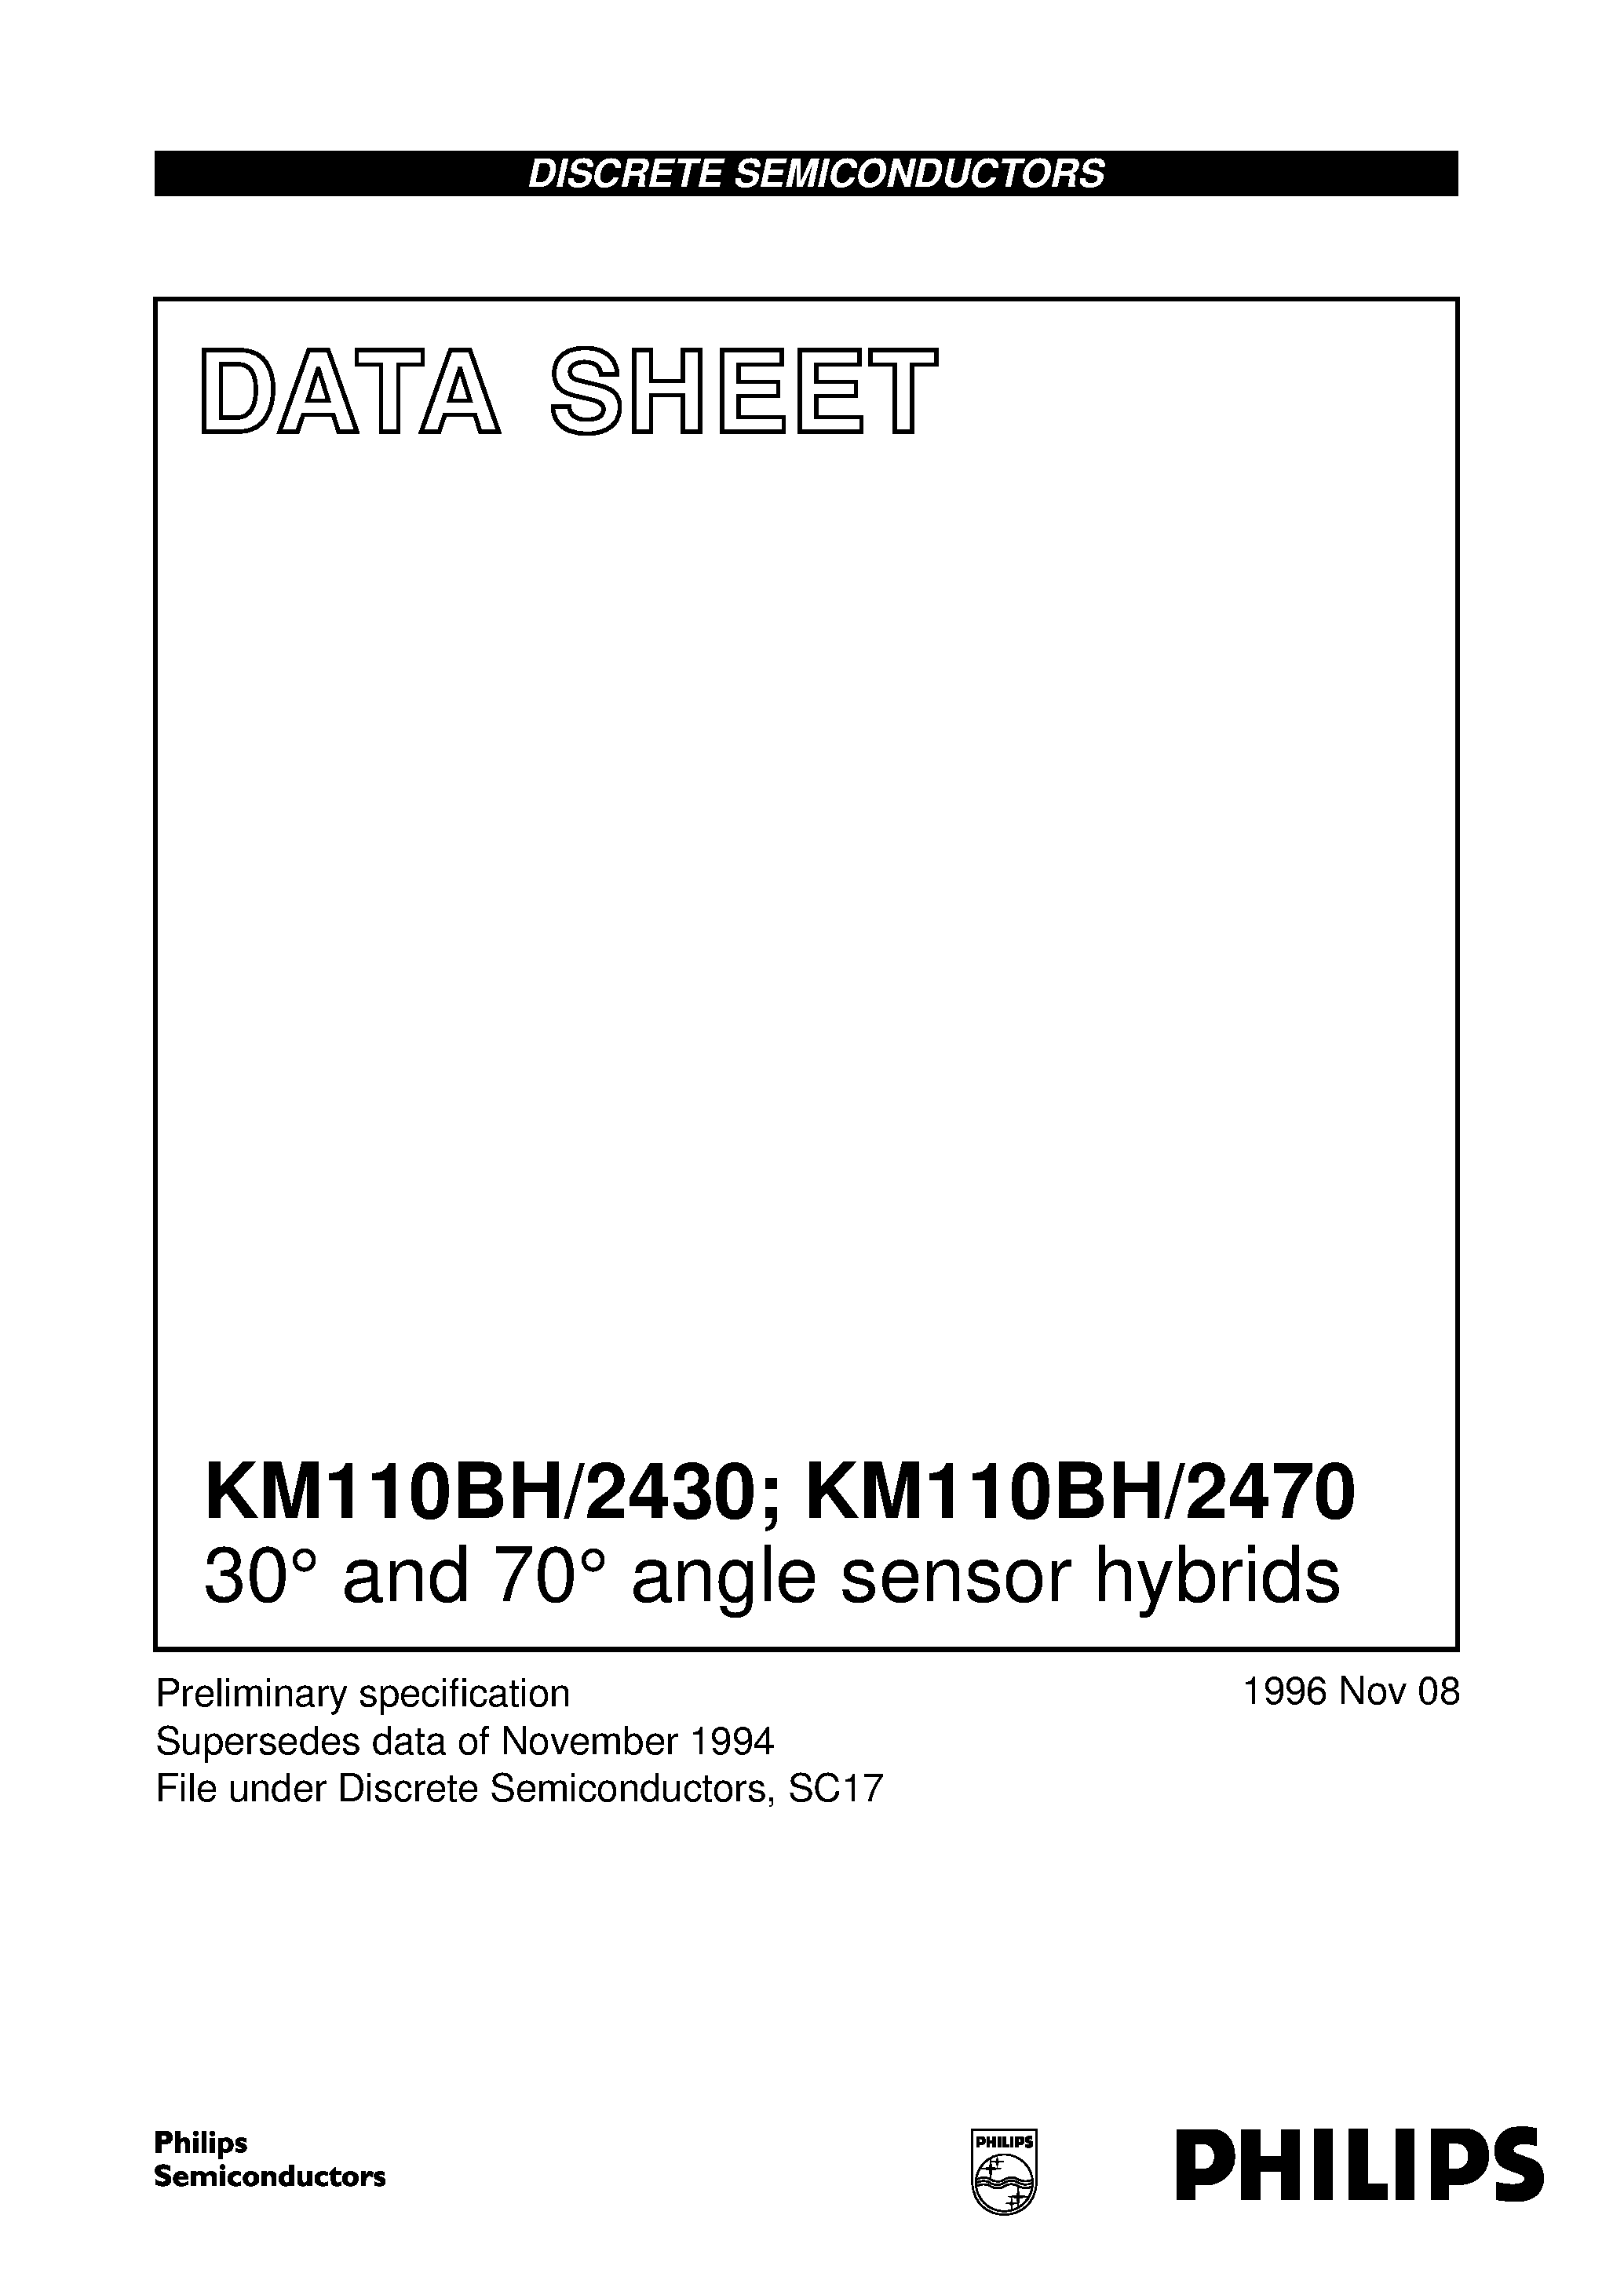 Даташит KM110BH-30 and 70 angle sensor hybrids страница 1